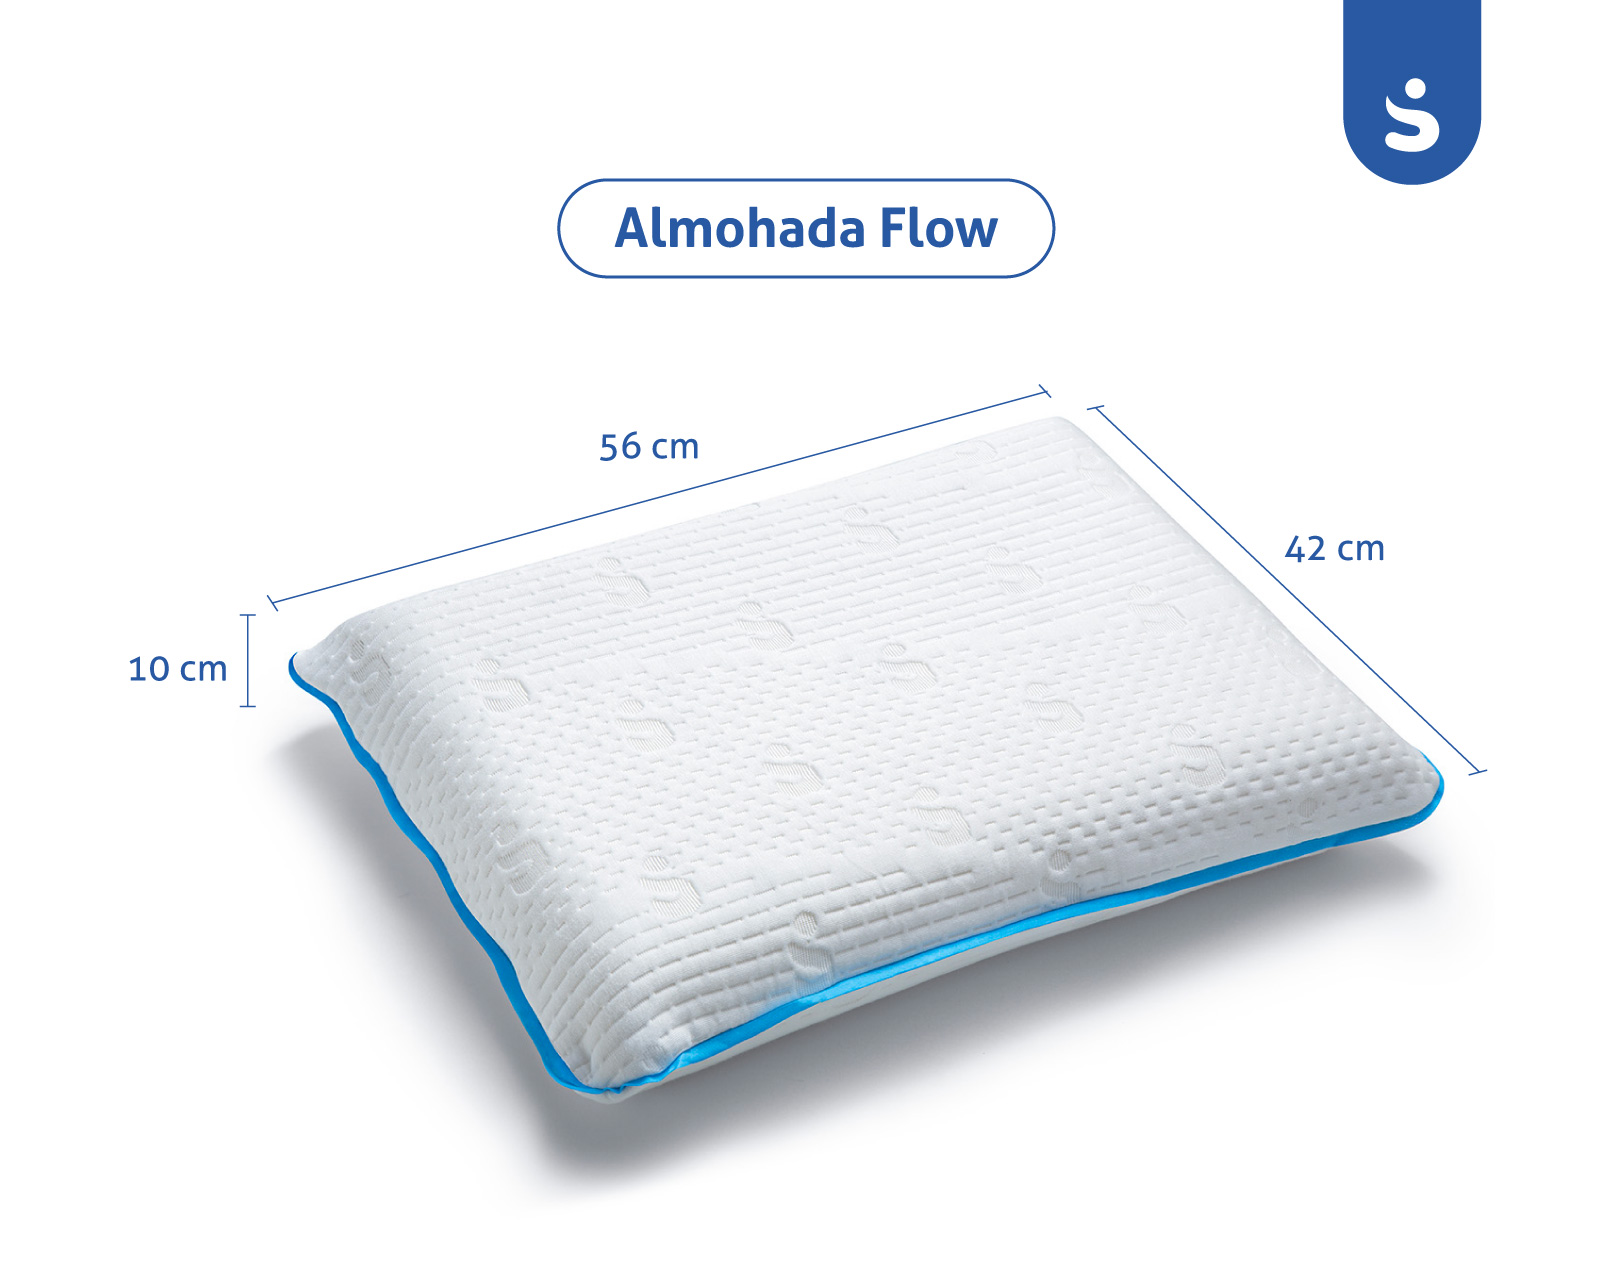 Almohada de Memory Foam Premium en una sola pieza SenSei Flow